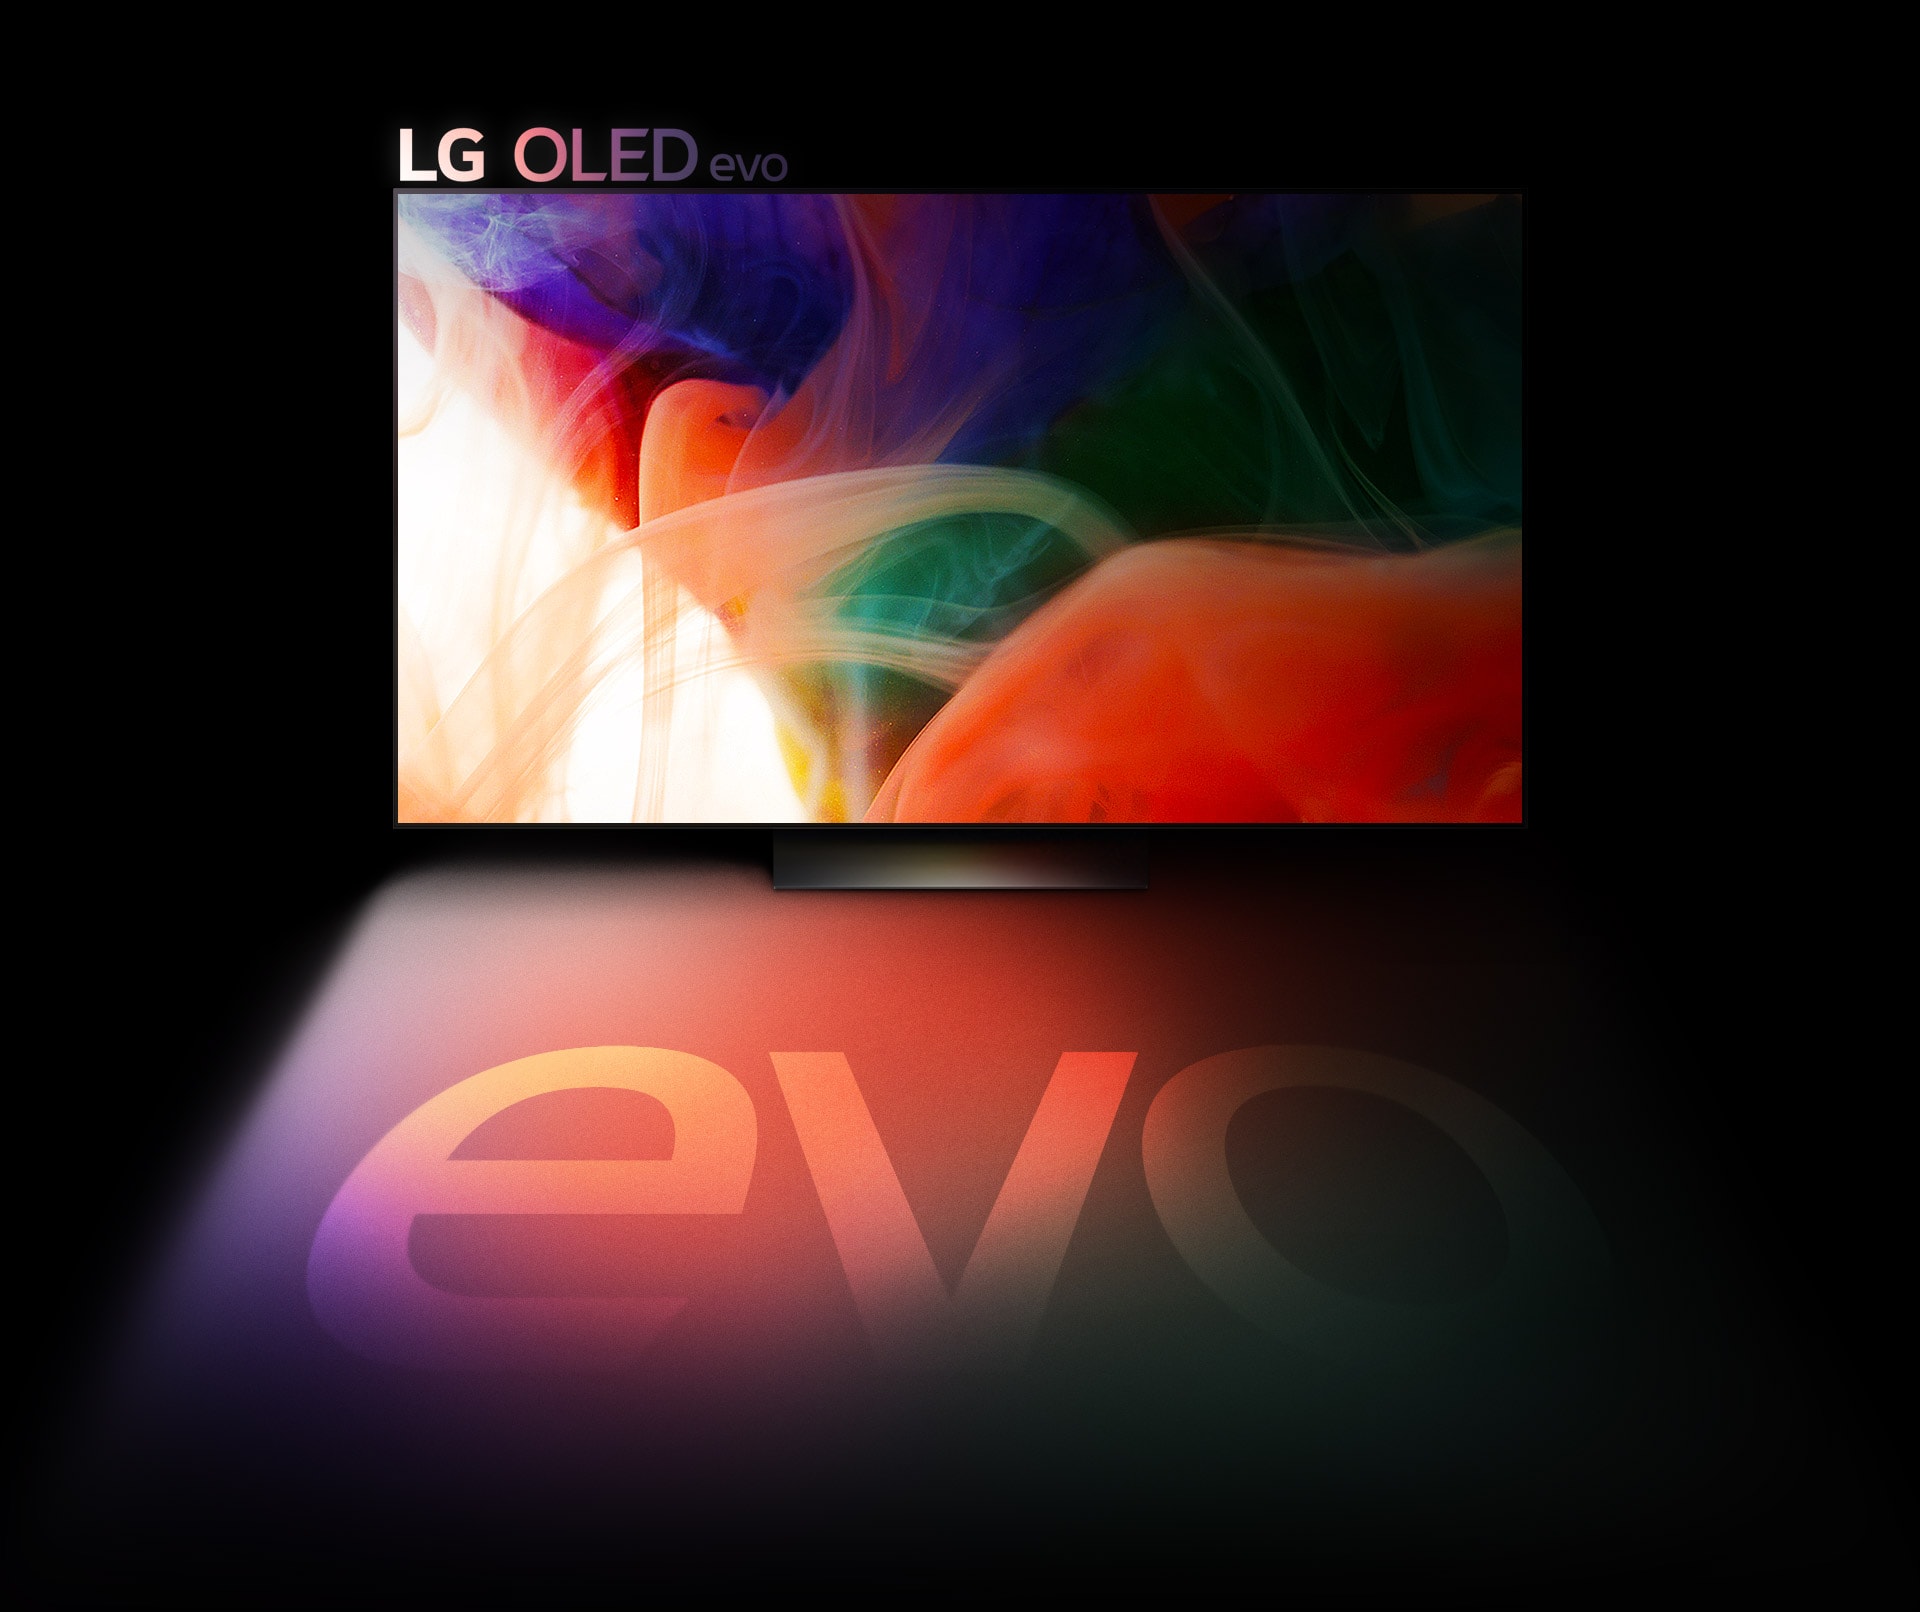 Цветно абстрактно изображение се показва на телевизор LG OLED evo